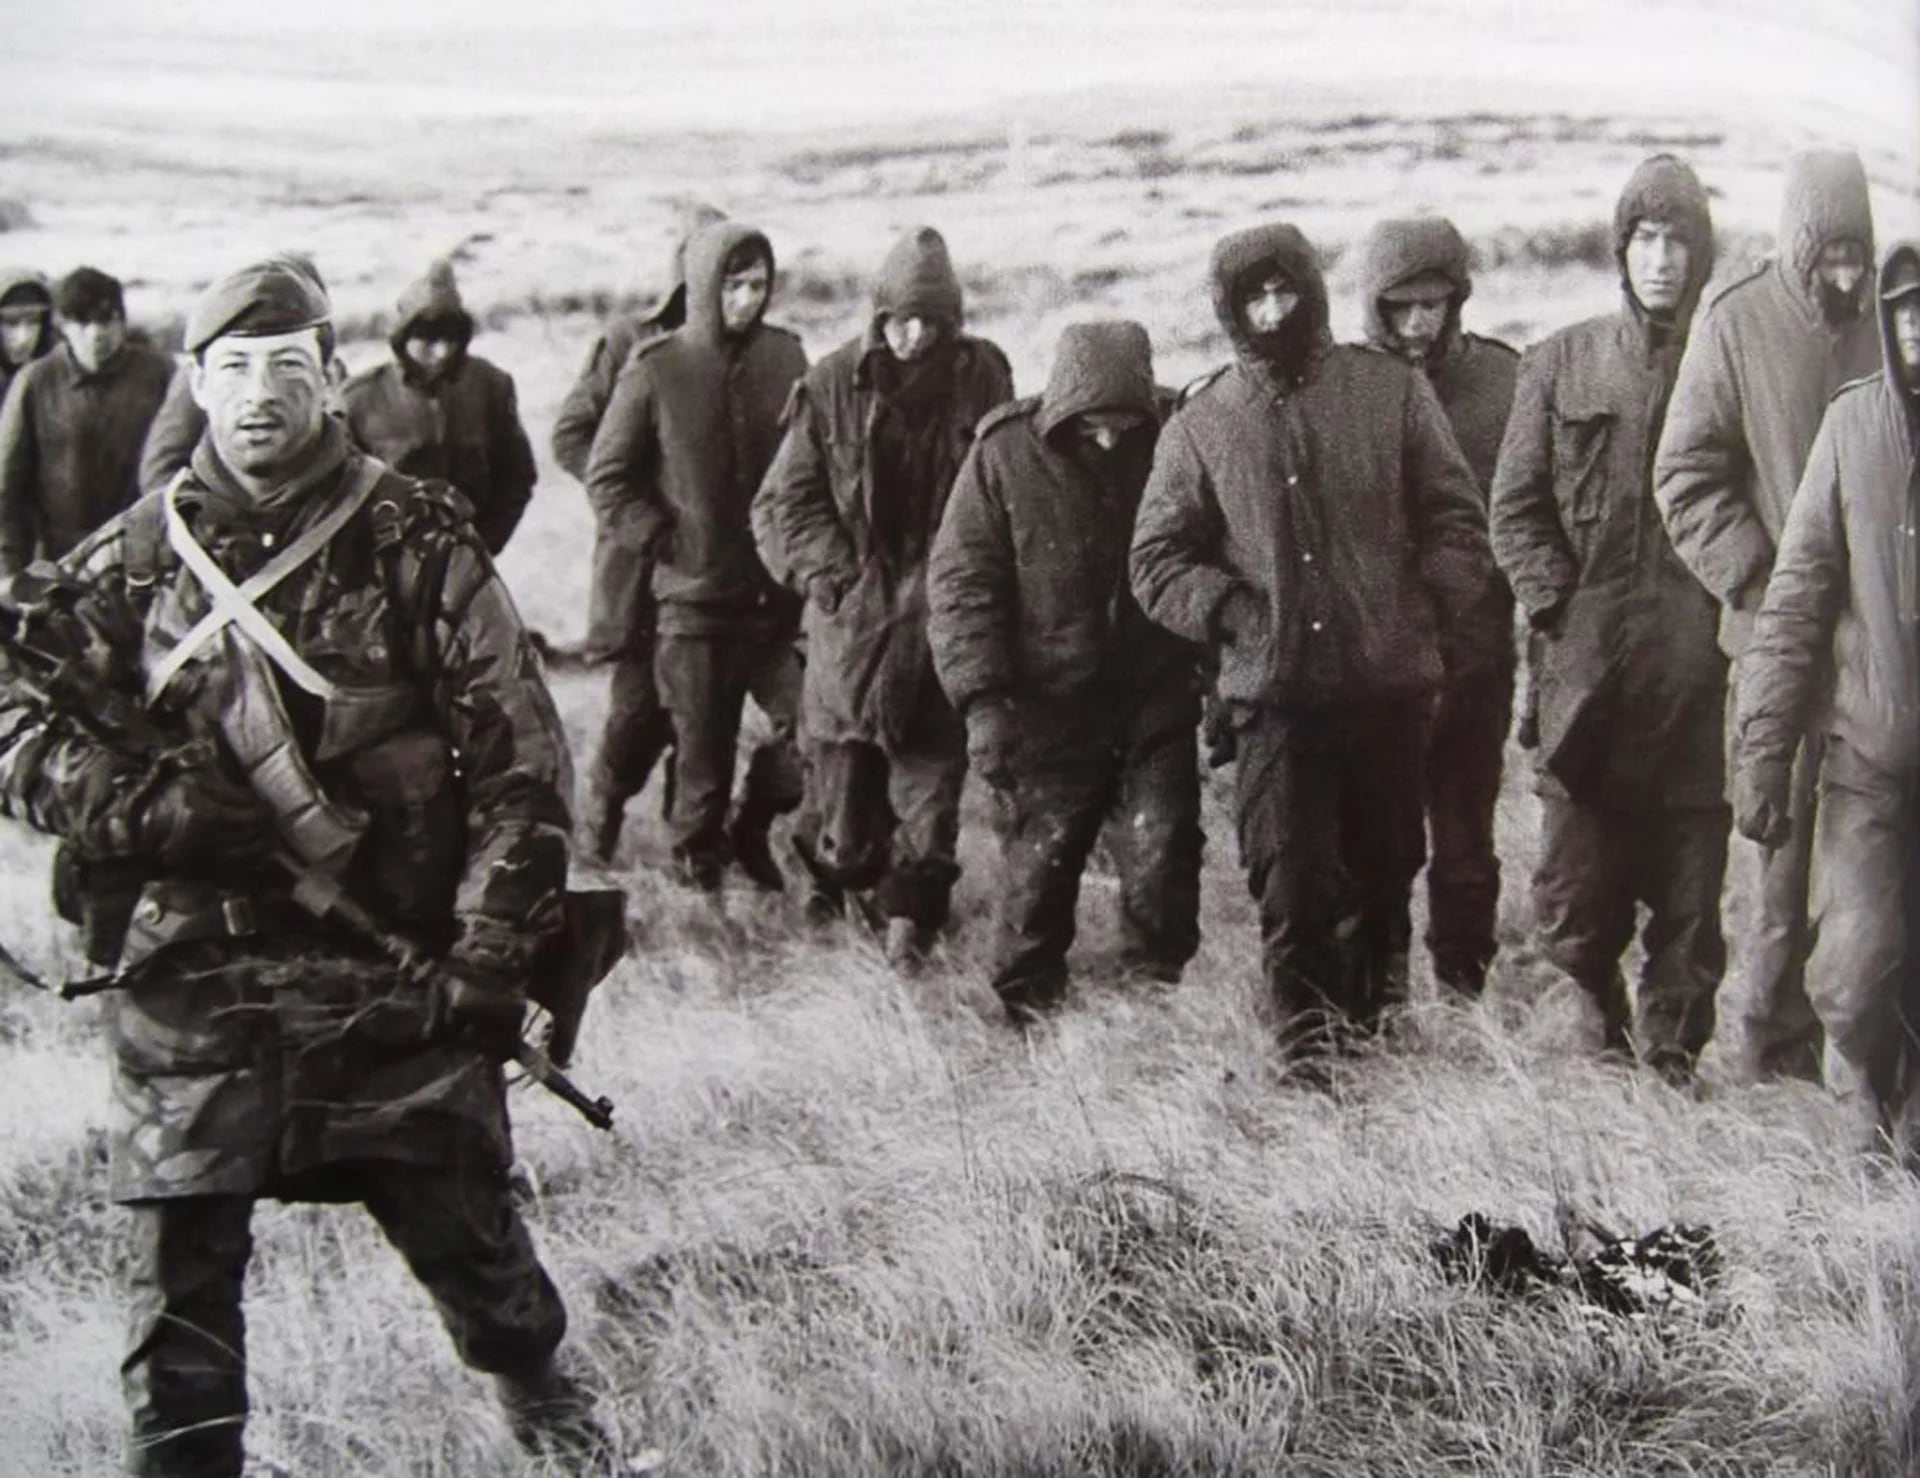 Exhaustos, muchos combatientes argentinos llevaban sesenta días en las mismas posiciones, en un clima extremo y bajo fuego desde el 1° de mayo